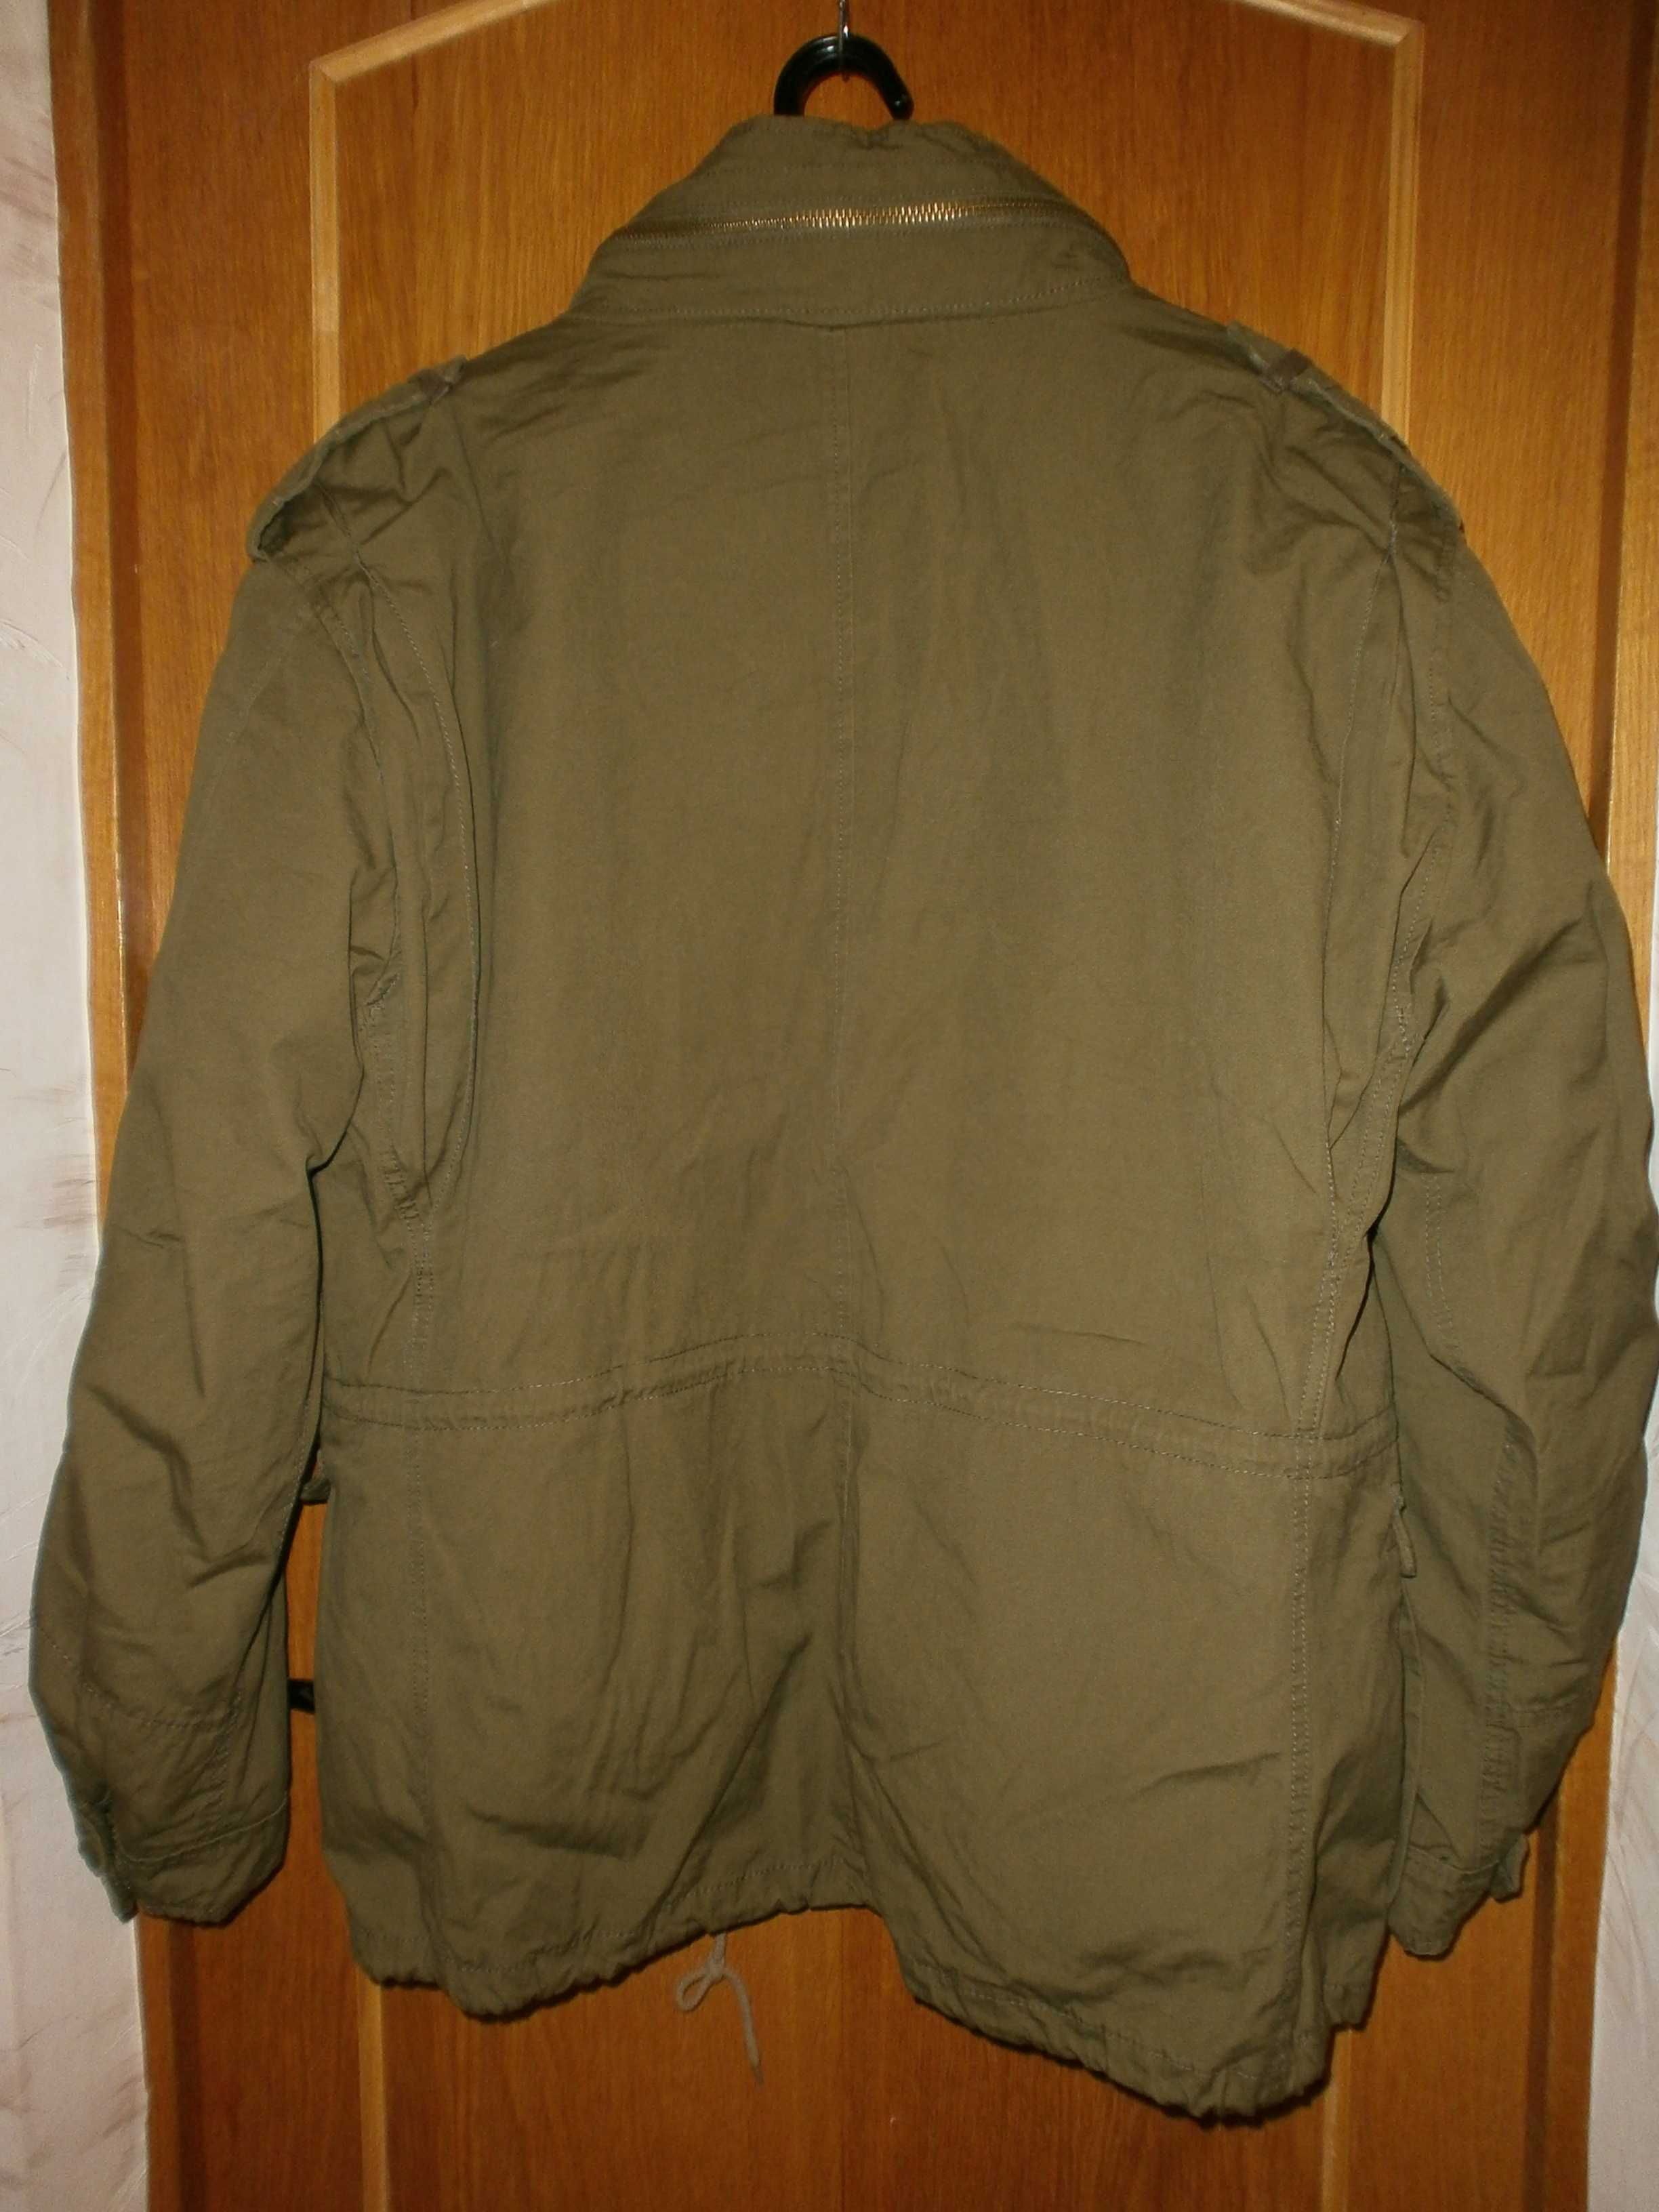 Куртка М65 Brandit Giant, олива, разм. XXL,наш 58.ПОГ-72 см.С лайнером